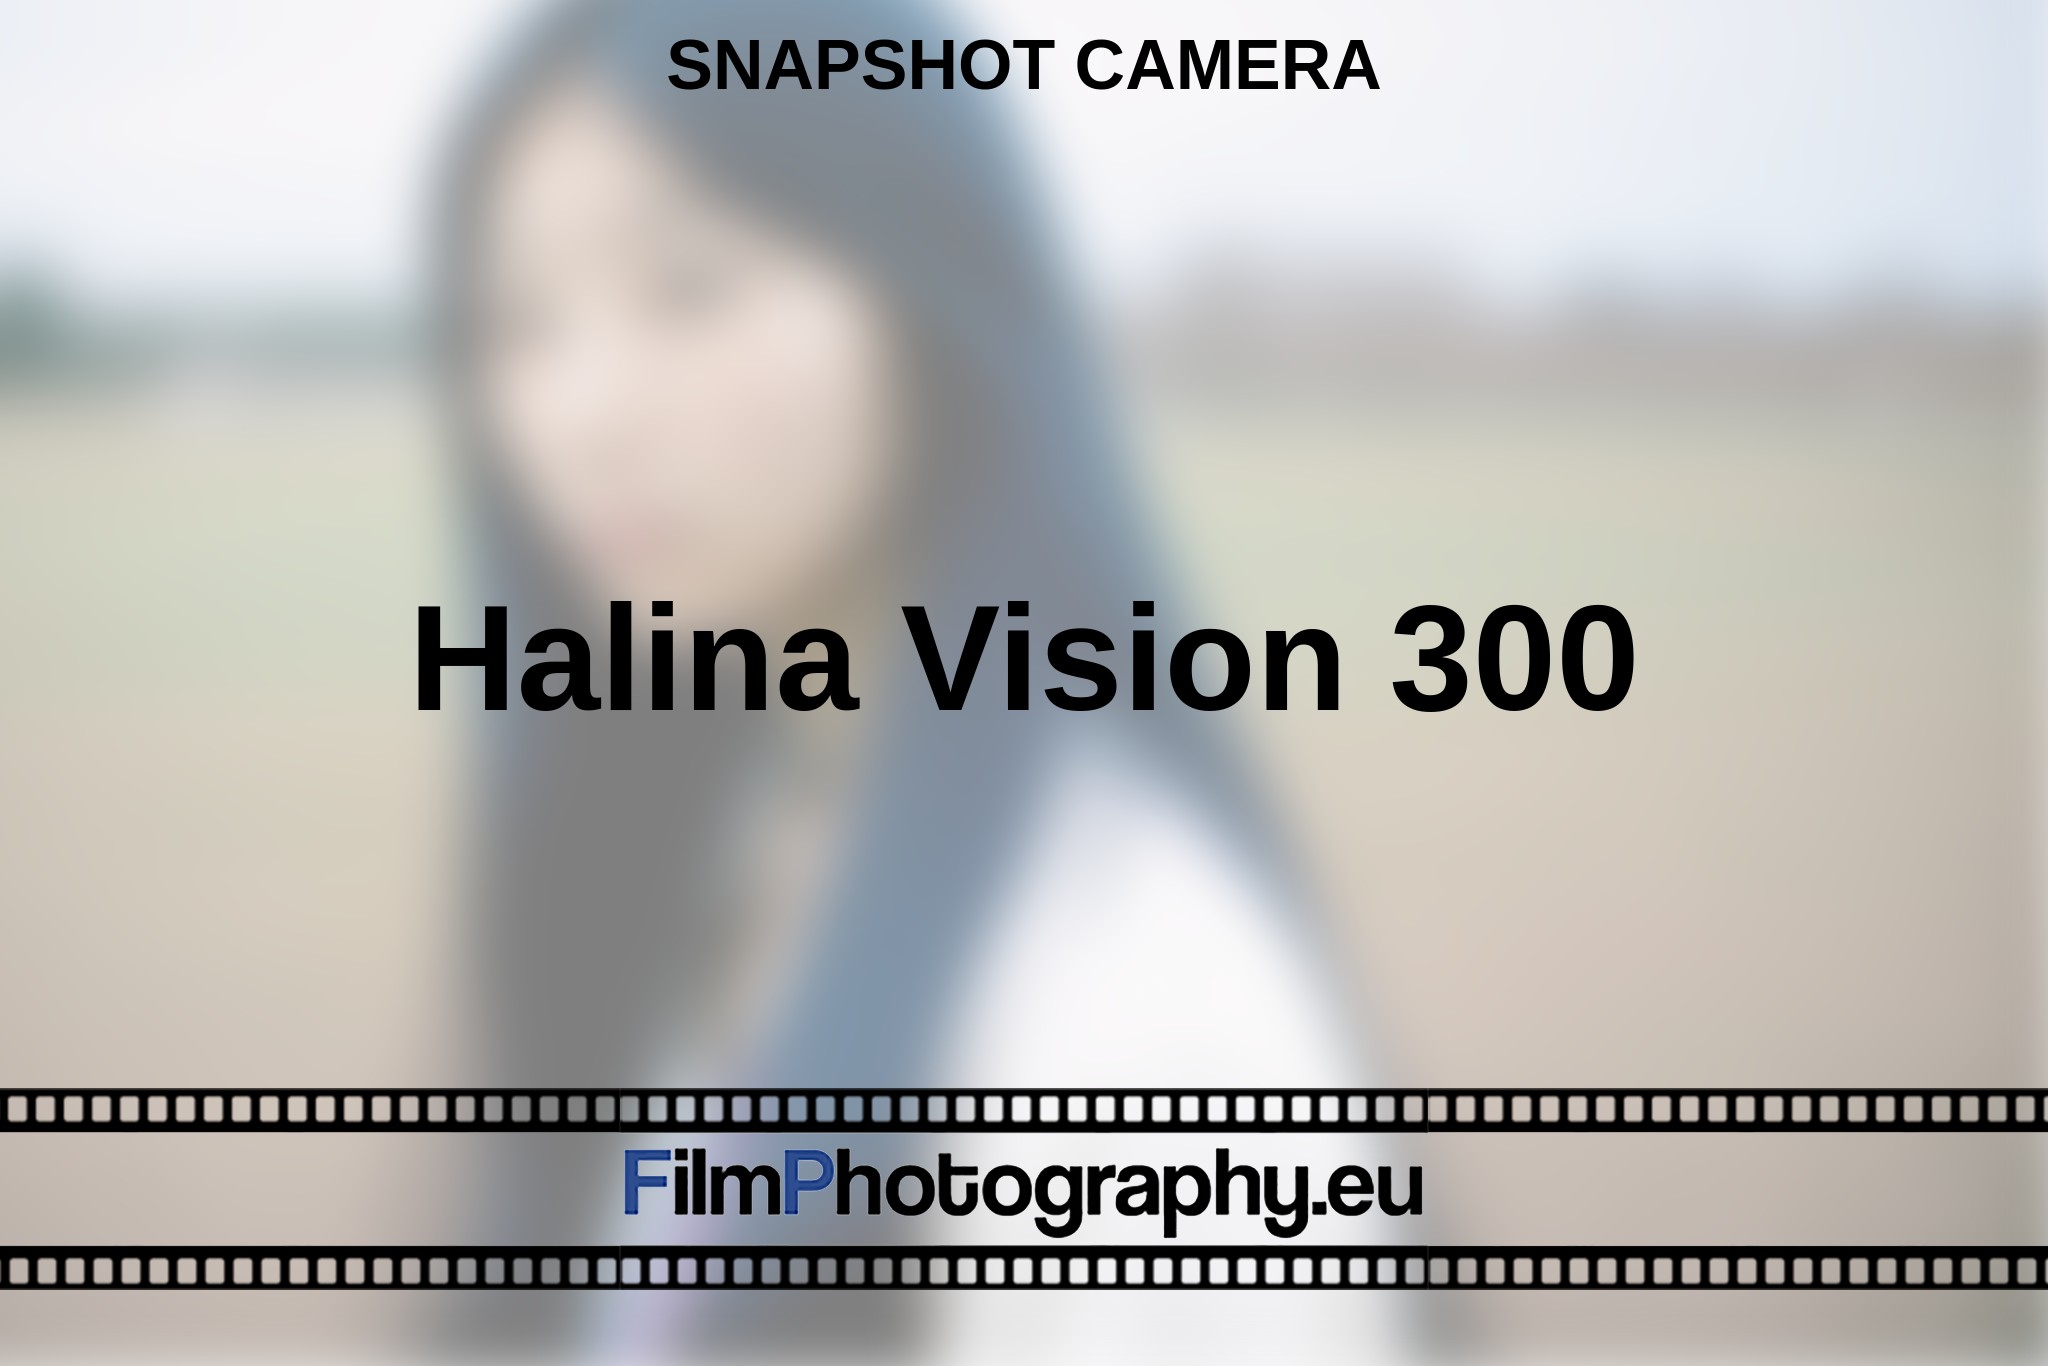 halina-vision-300-snapshot-camera-en-bnv.jpg